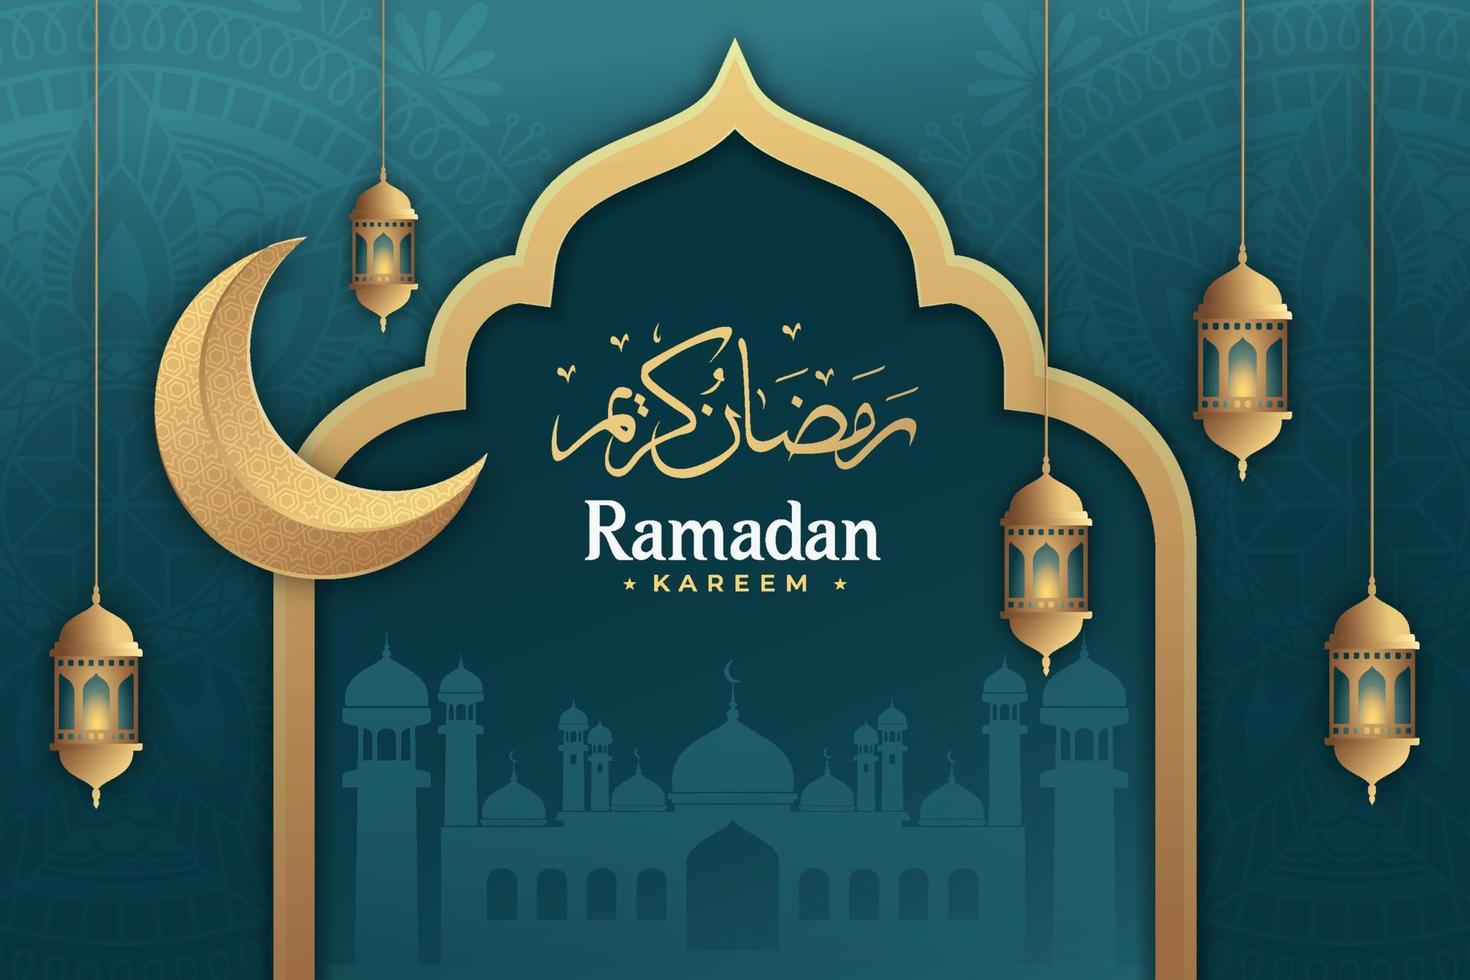 Ramadan kareem met lantaarns en mandala achtergrond premie vector